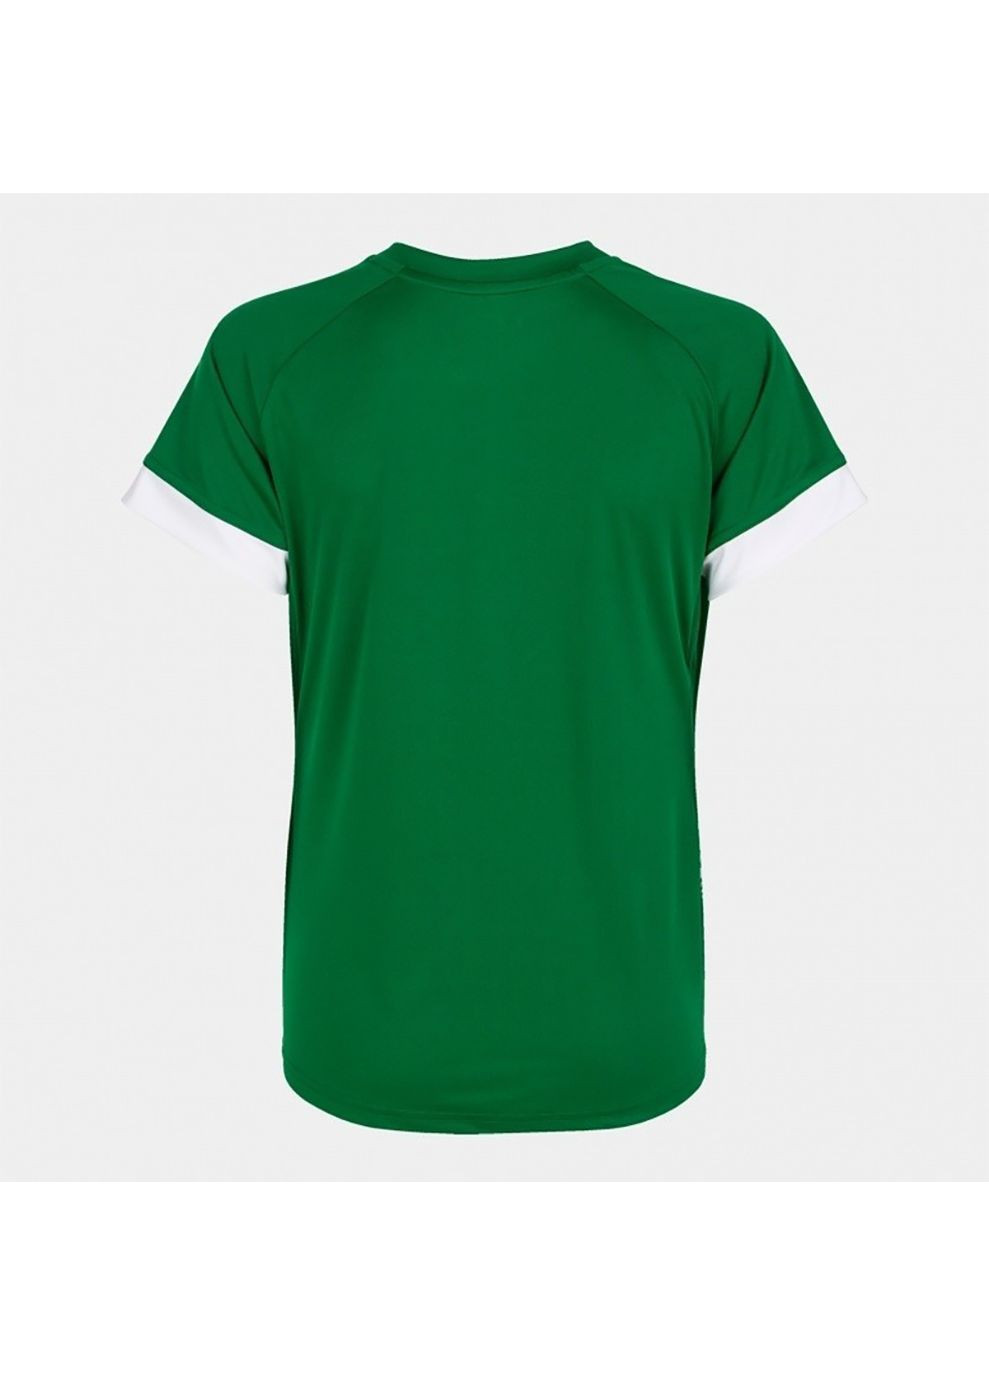 Белая демисезон футболка женская supernova iii зеленый,белый Joma